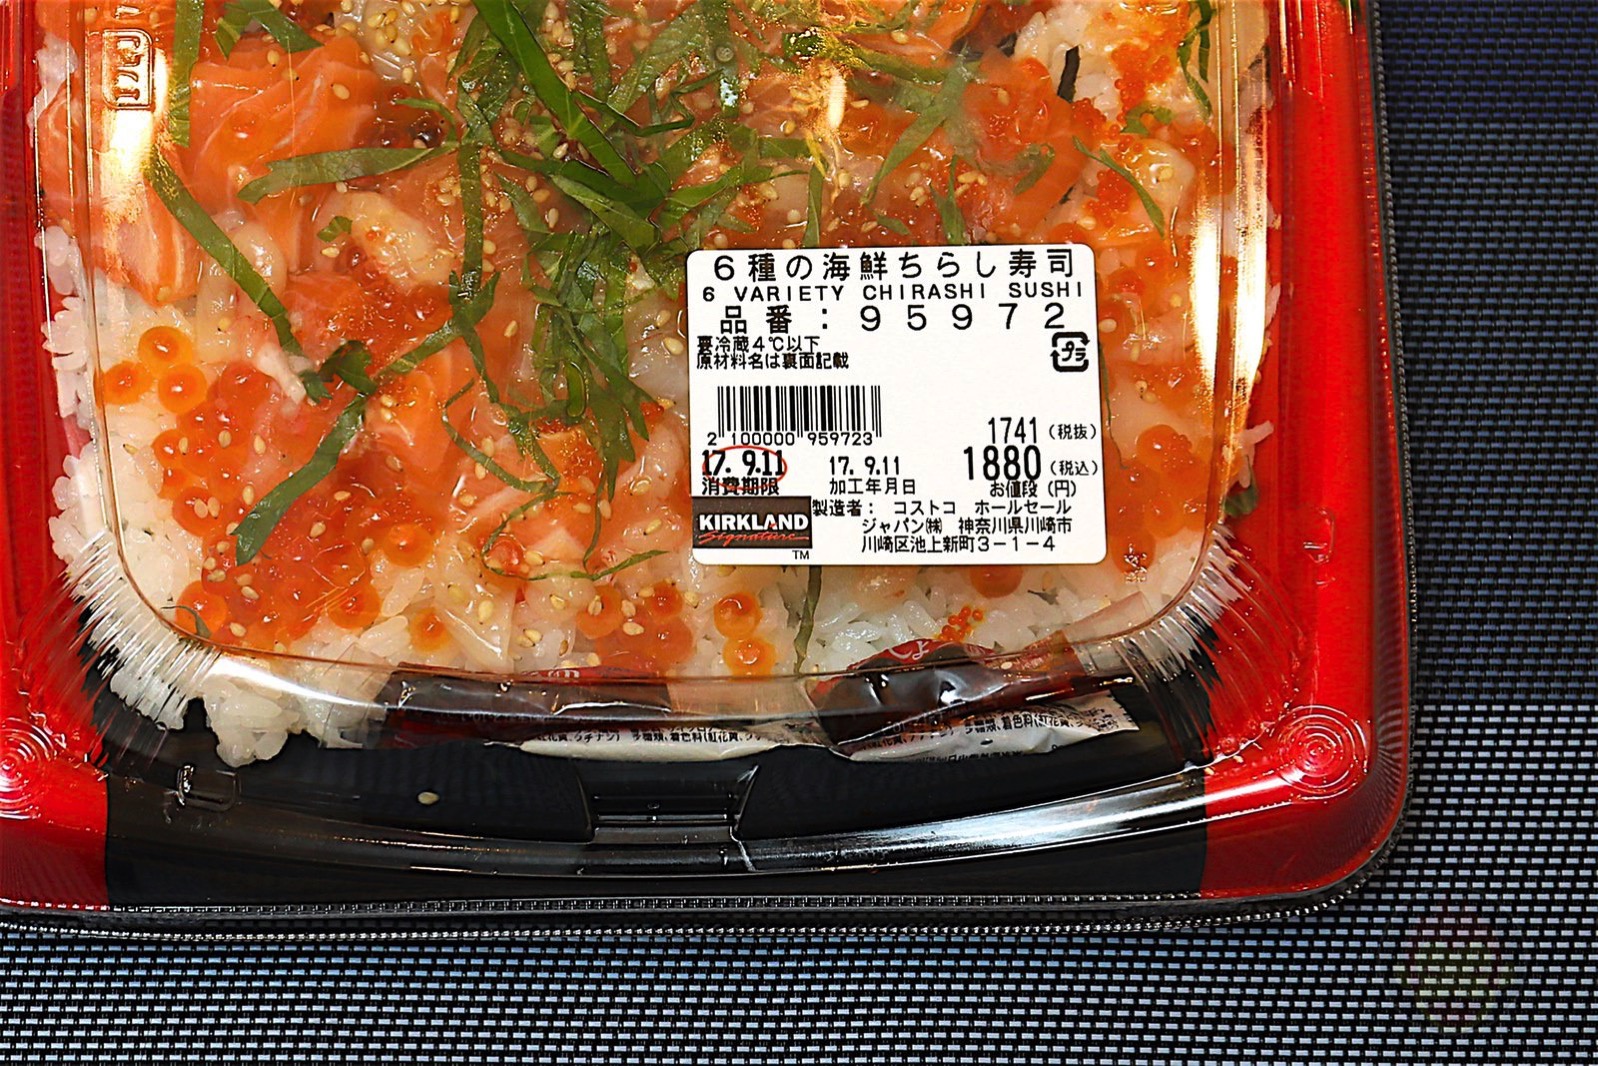 Costco-Chirashi-Sushi-Platter-05.jpg